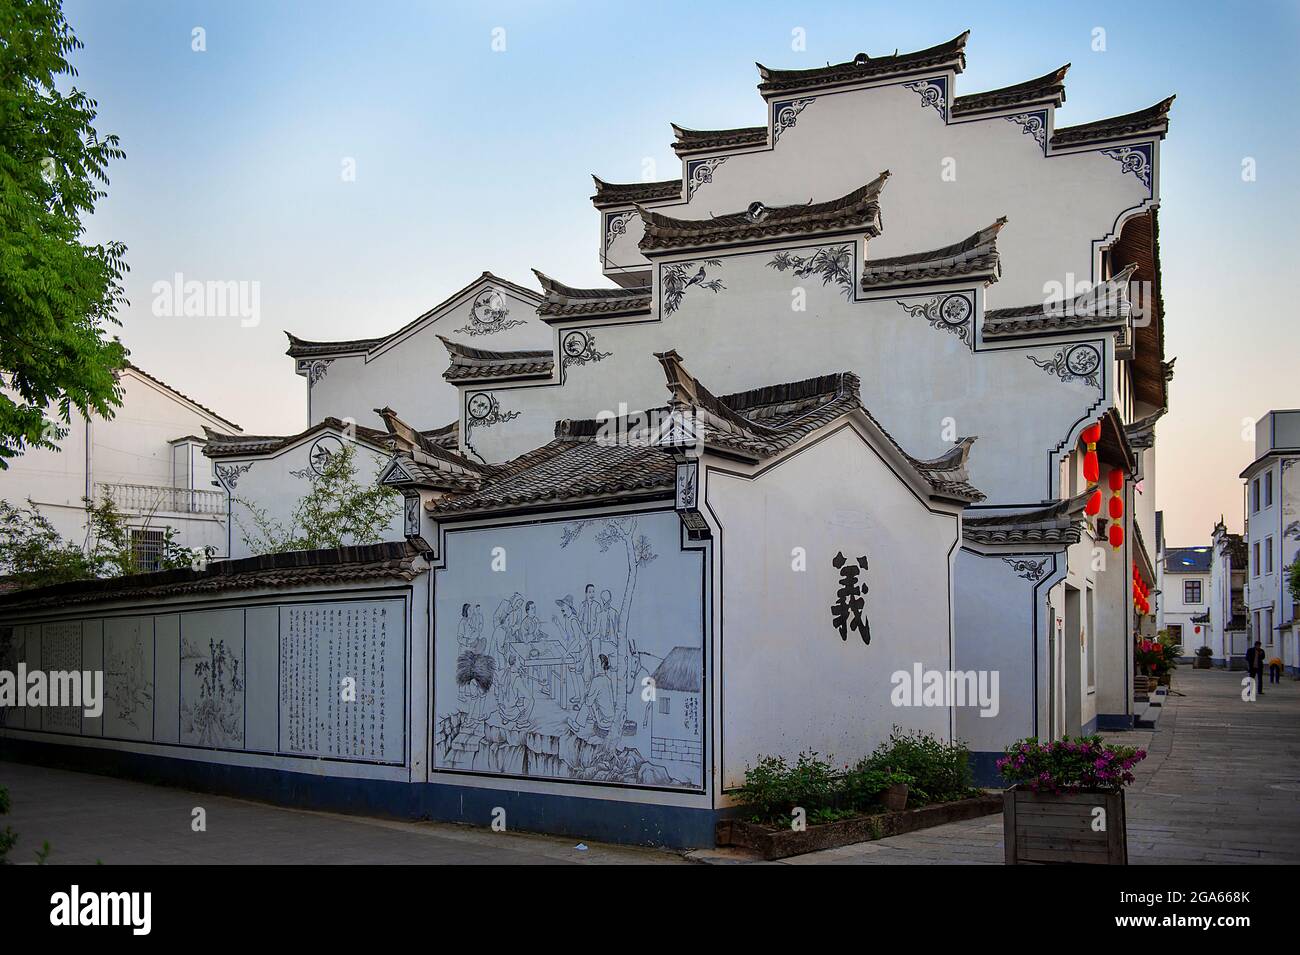 Hui Style Architecture Zhejiang China Stock Photo